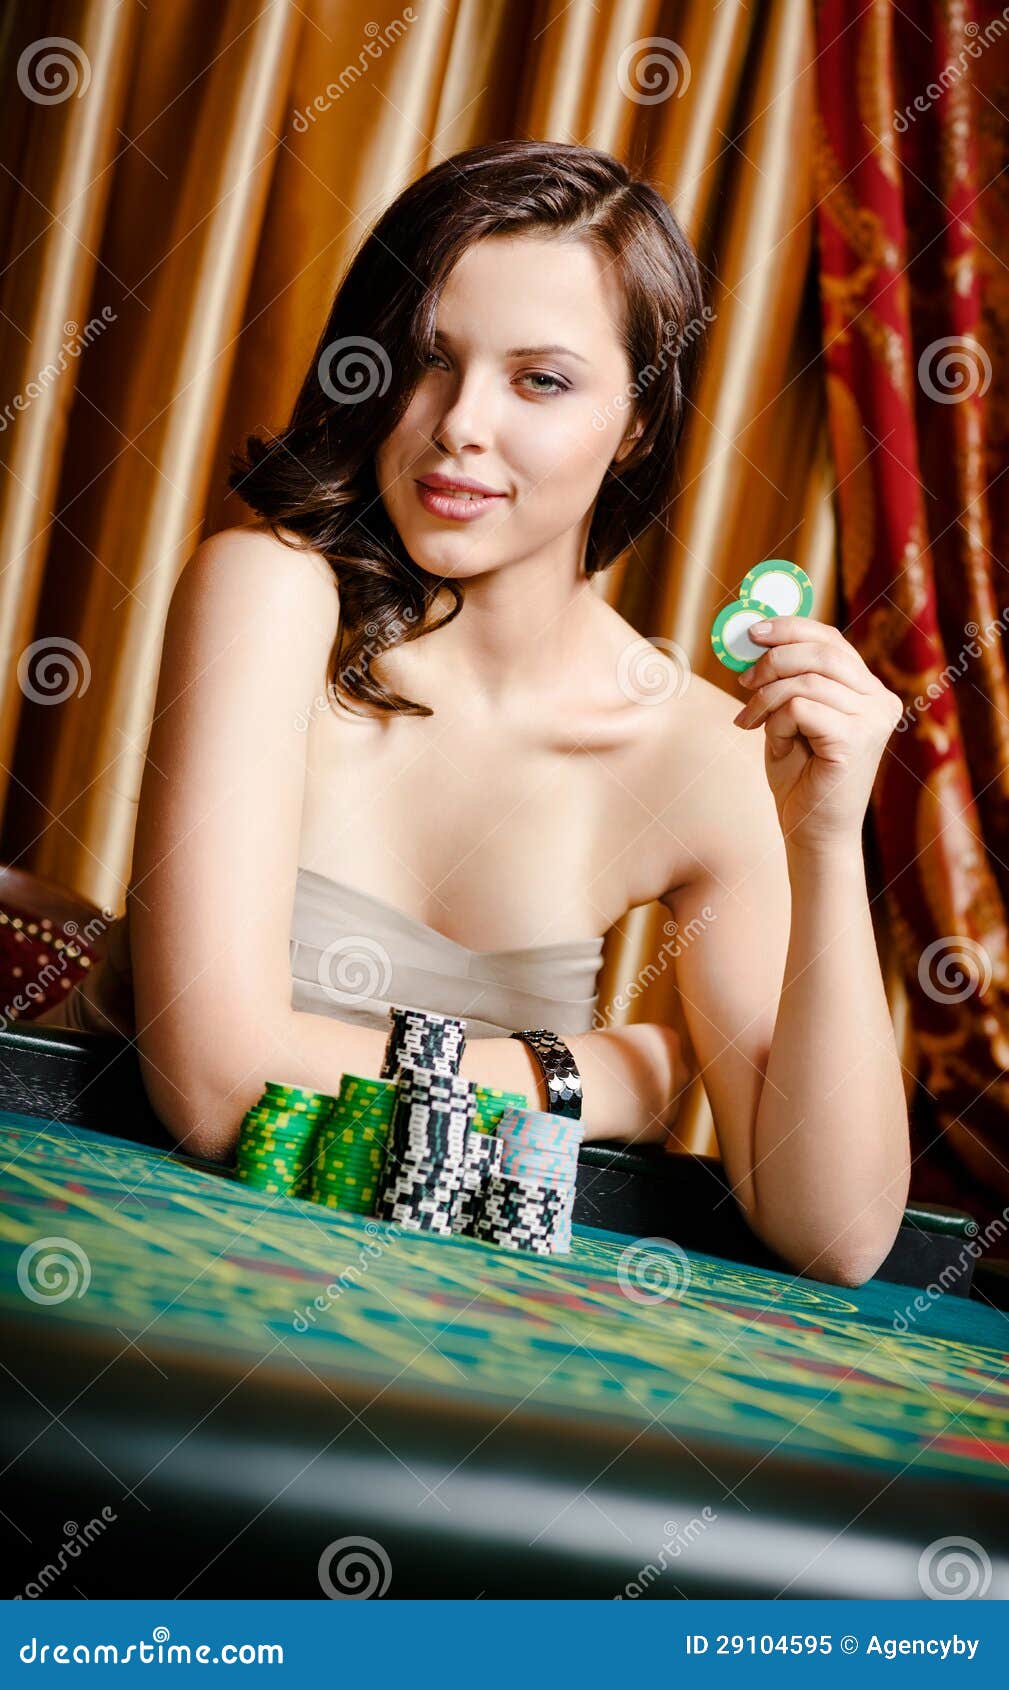 女性赌客在与筹码的使用的表. 在手中坐在与筹码的使用的表的女性赌客纵向